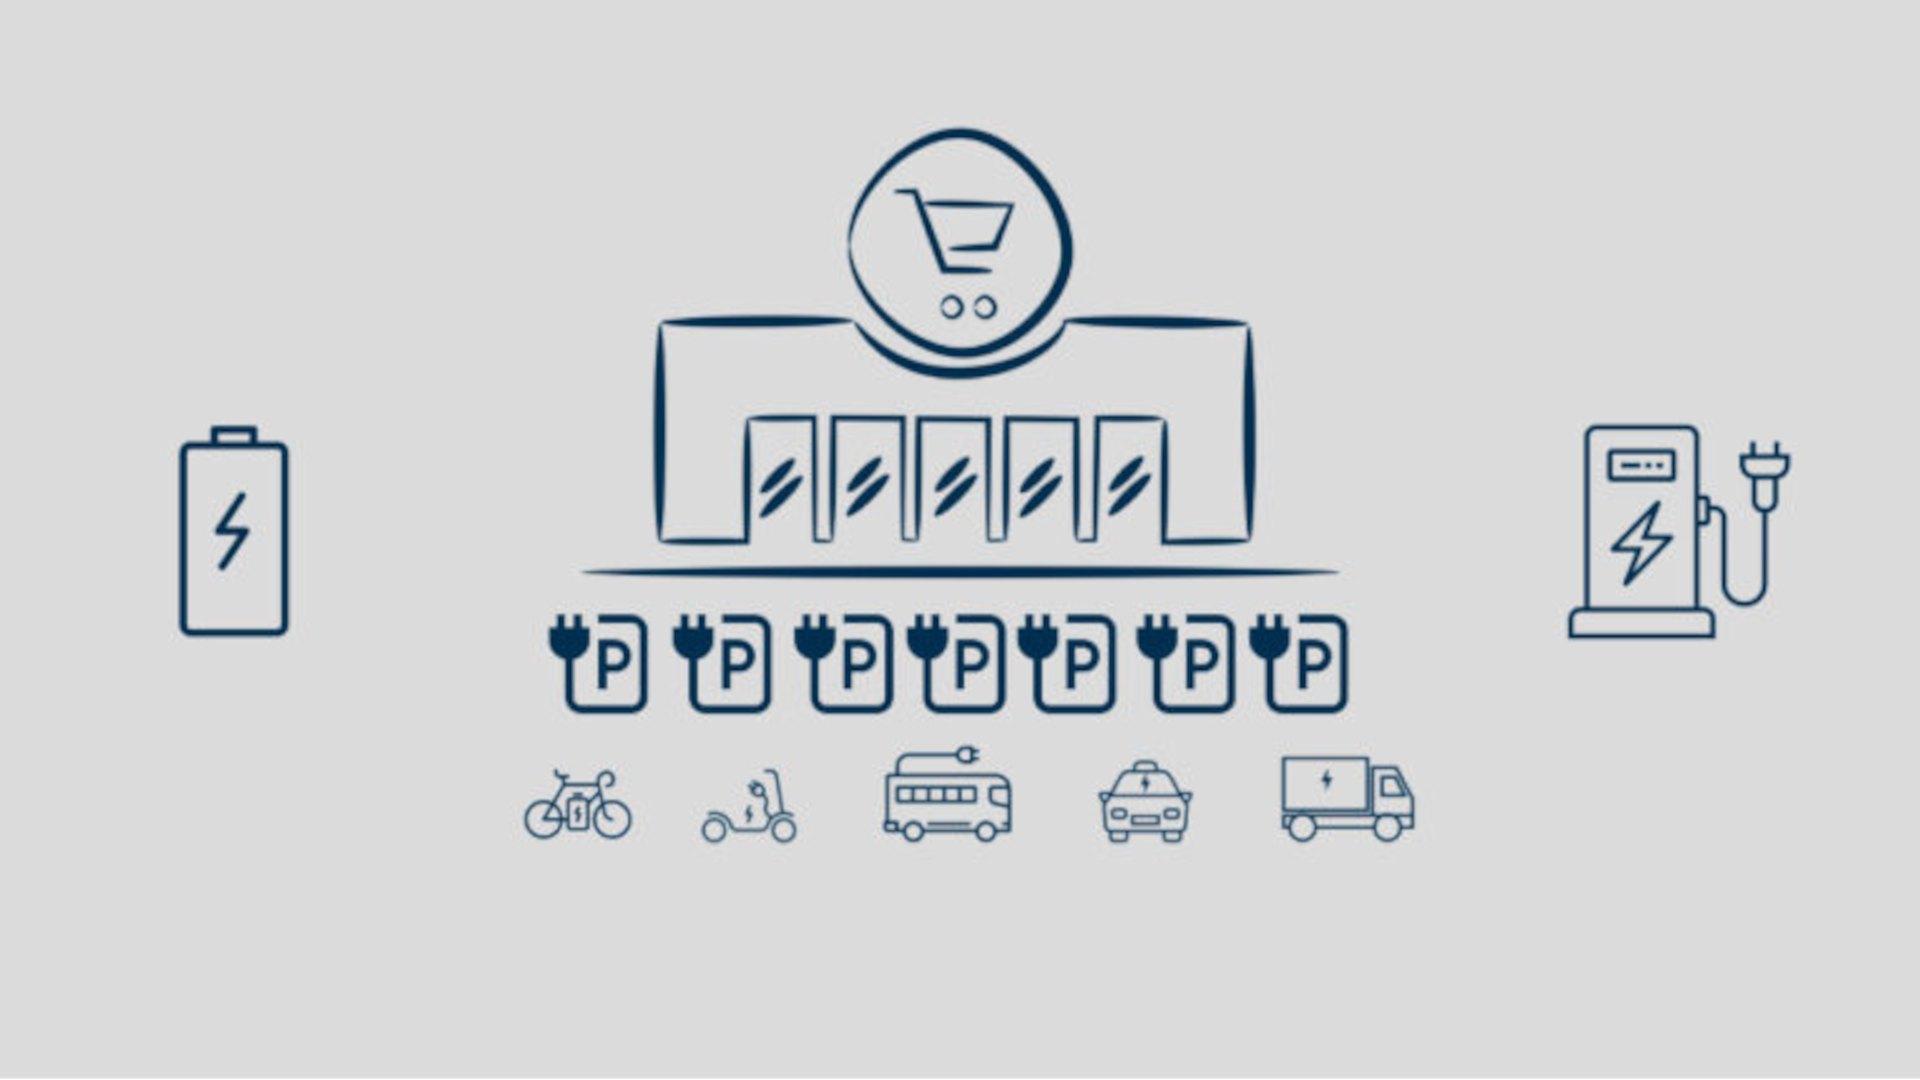 Schematische Grafik, die im Zentrum einen Supermarkt darstellt. Darunter werden Icons für Parkplätze für elektrisch betriebene Fahrzeuge dargestellt und verschiedene elektrisch betriebene Fahrzeuge abgebildet. Links vom Supermarkt wird eine Batterie abgebildet und rechts vom Supermarkt eine Ladesäule.